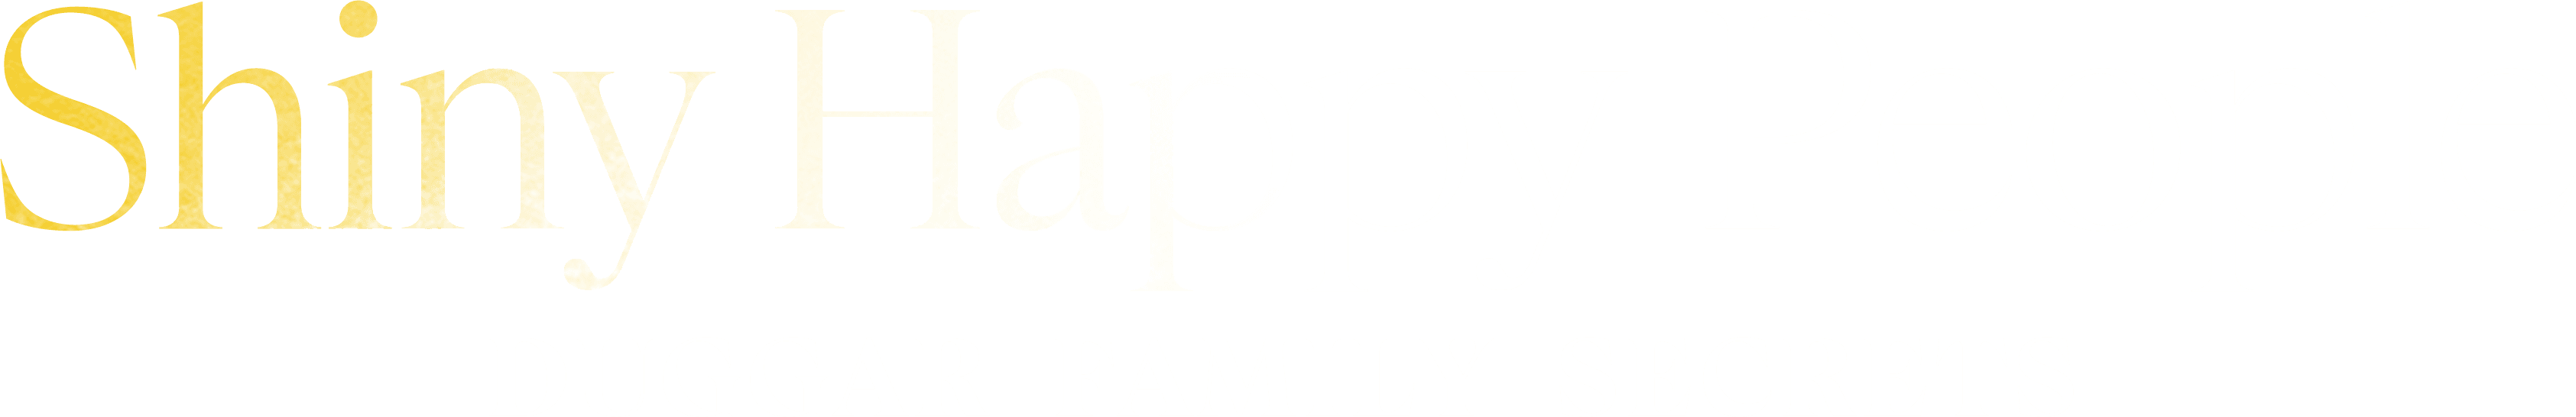 Shiny Happy People: Duggar Family Secrets logo